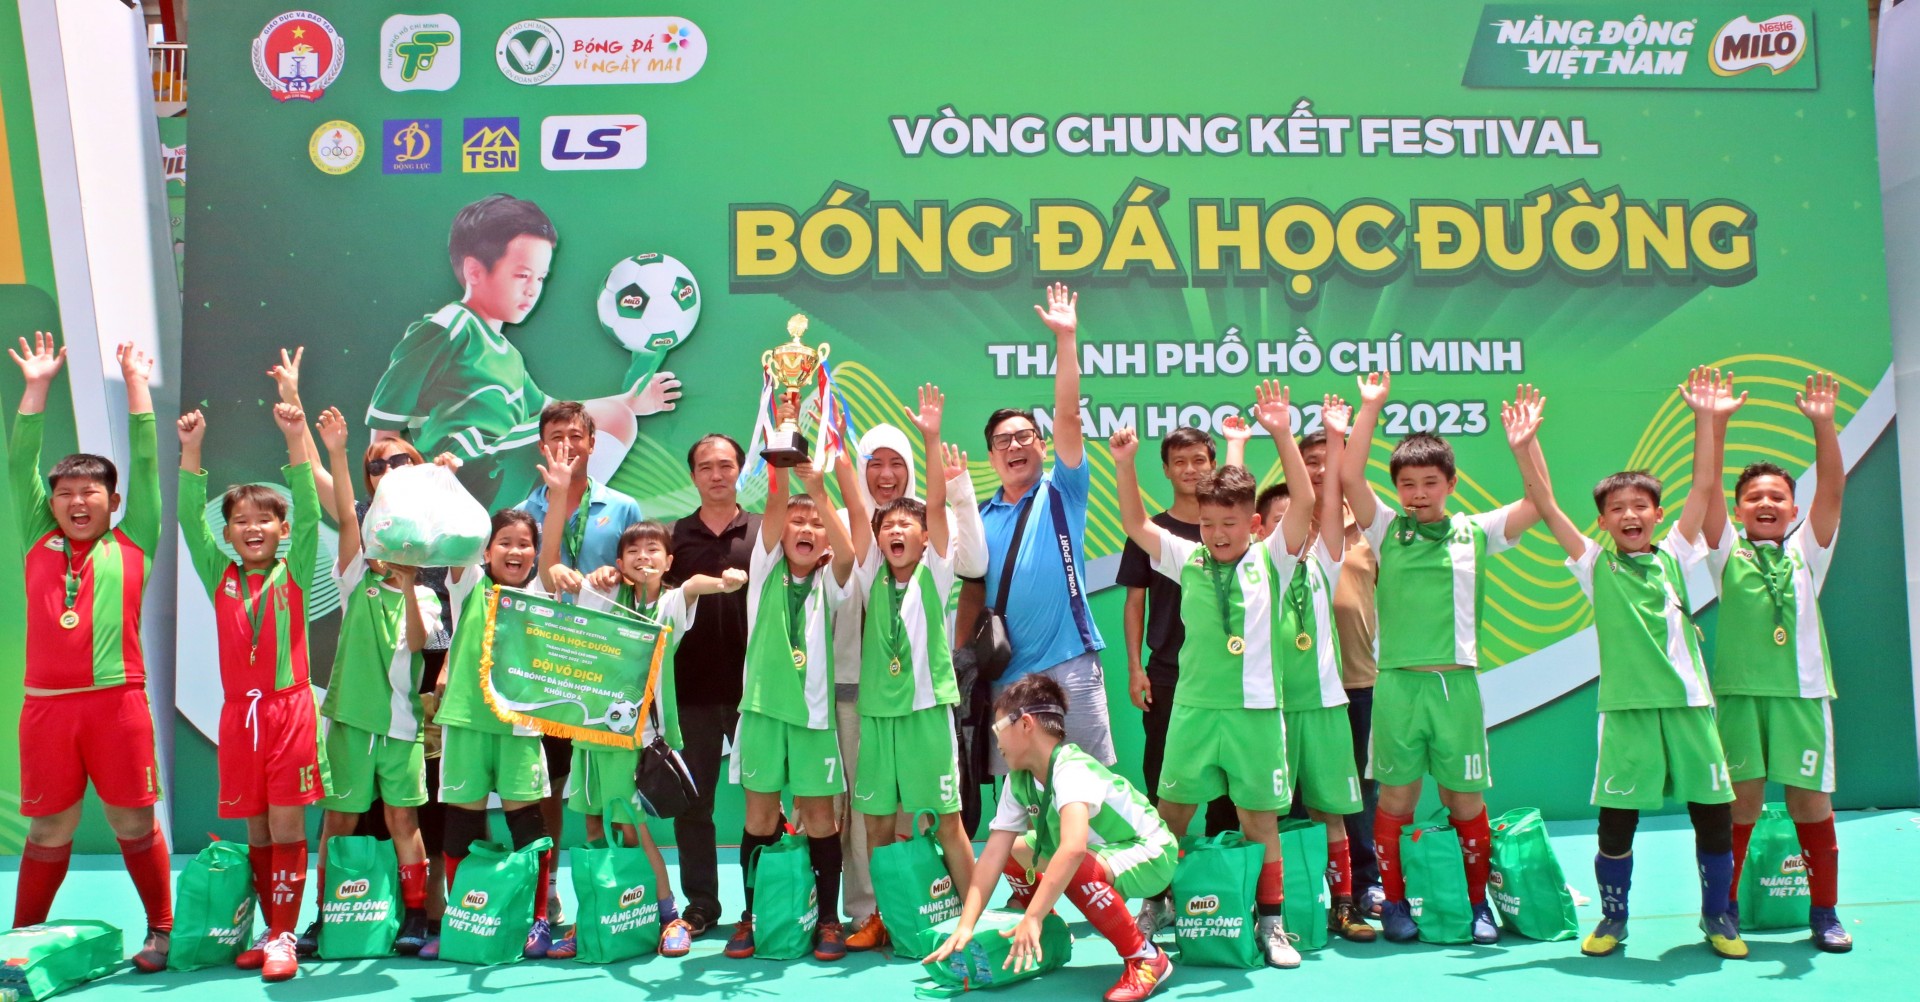 VCK Festival bóng đá học đường năm 2022 2023. Vòng chung kết của cảm xúc !